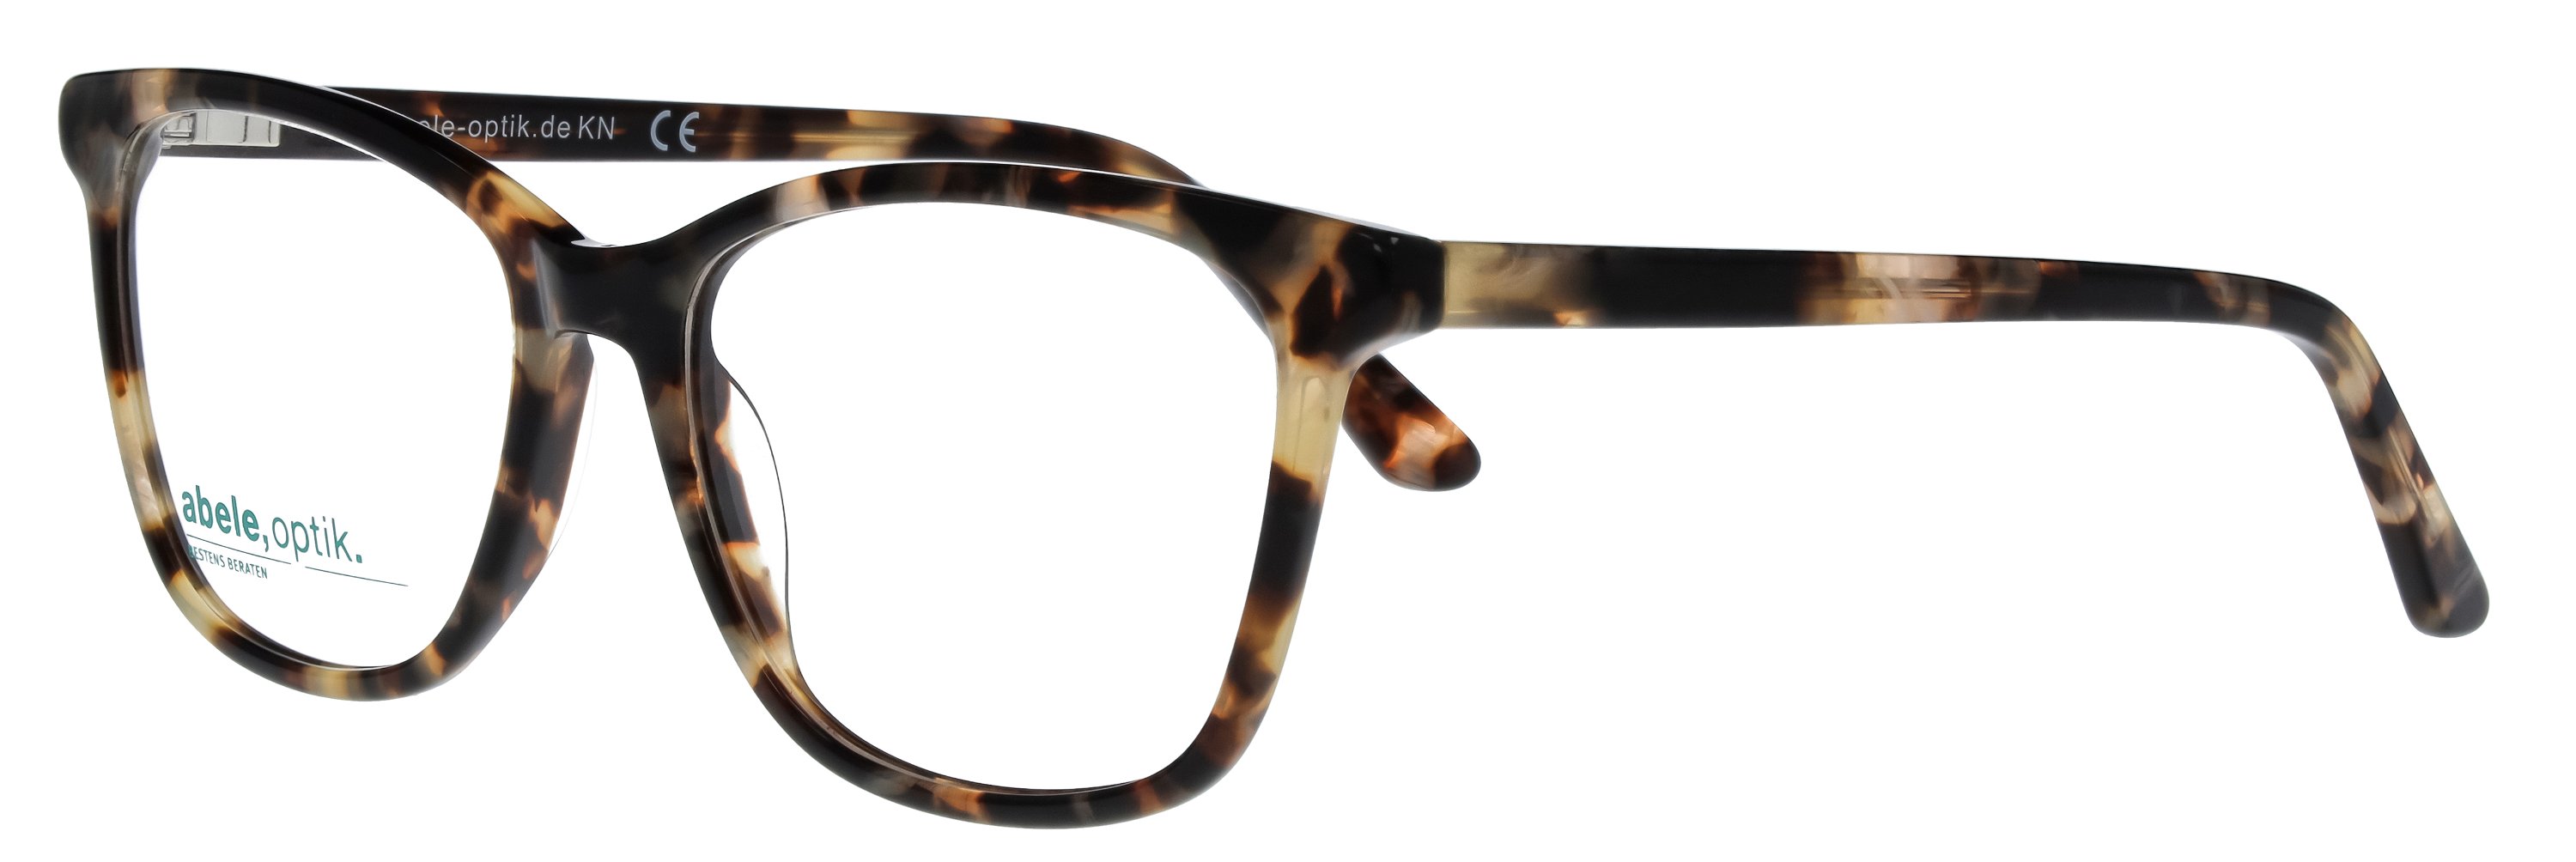 Das Bild zeigt die Korrektionsbrille 148891 von der Marke Abele Optik in havanna.